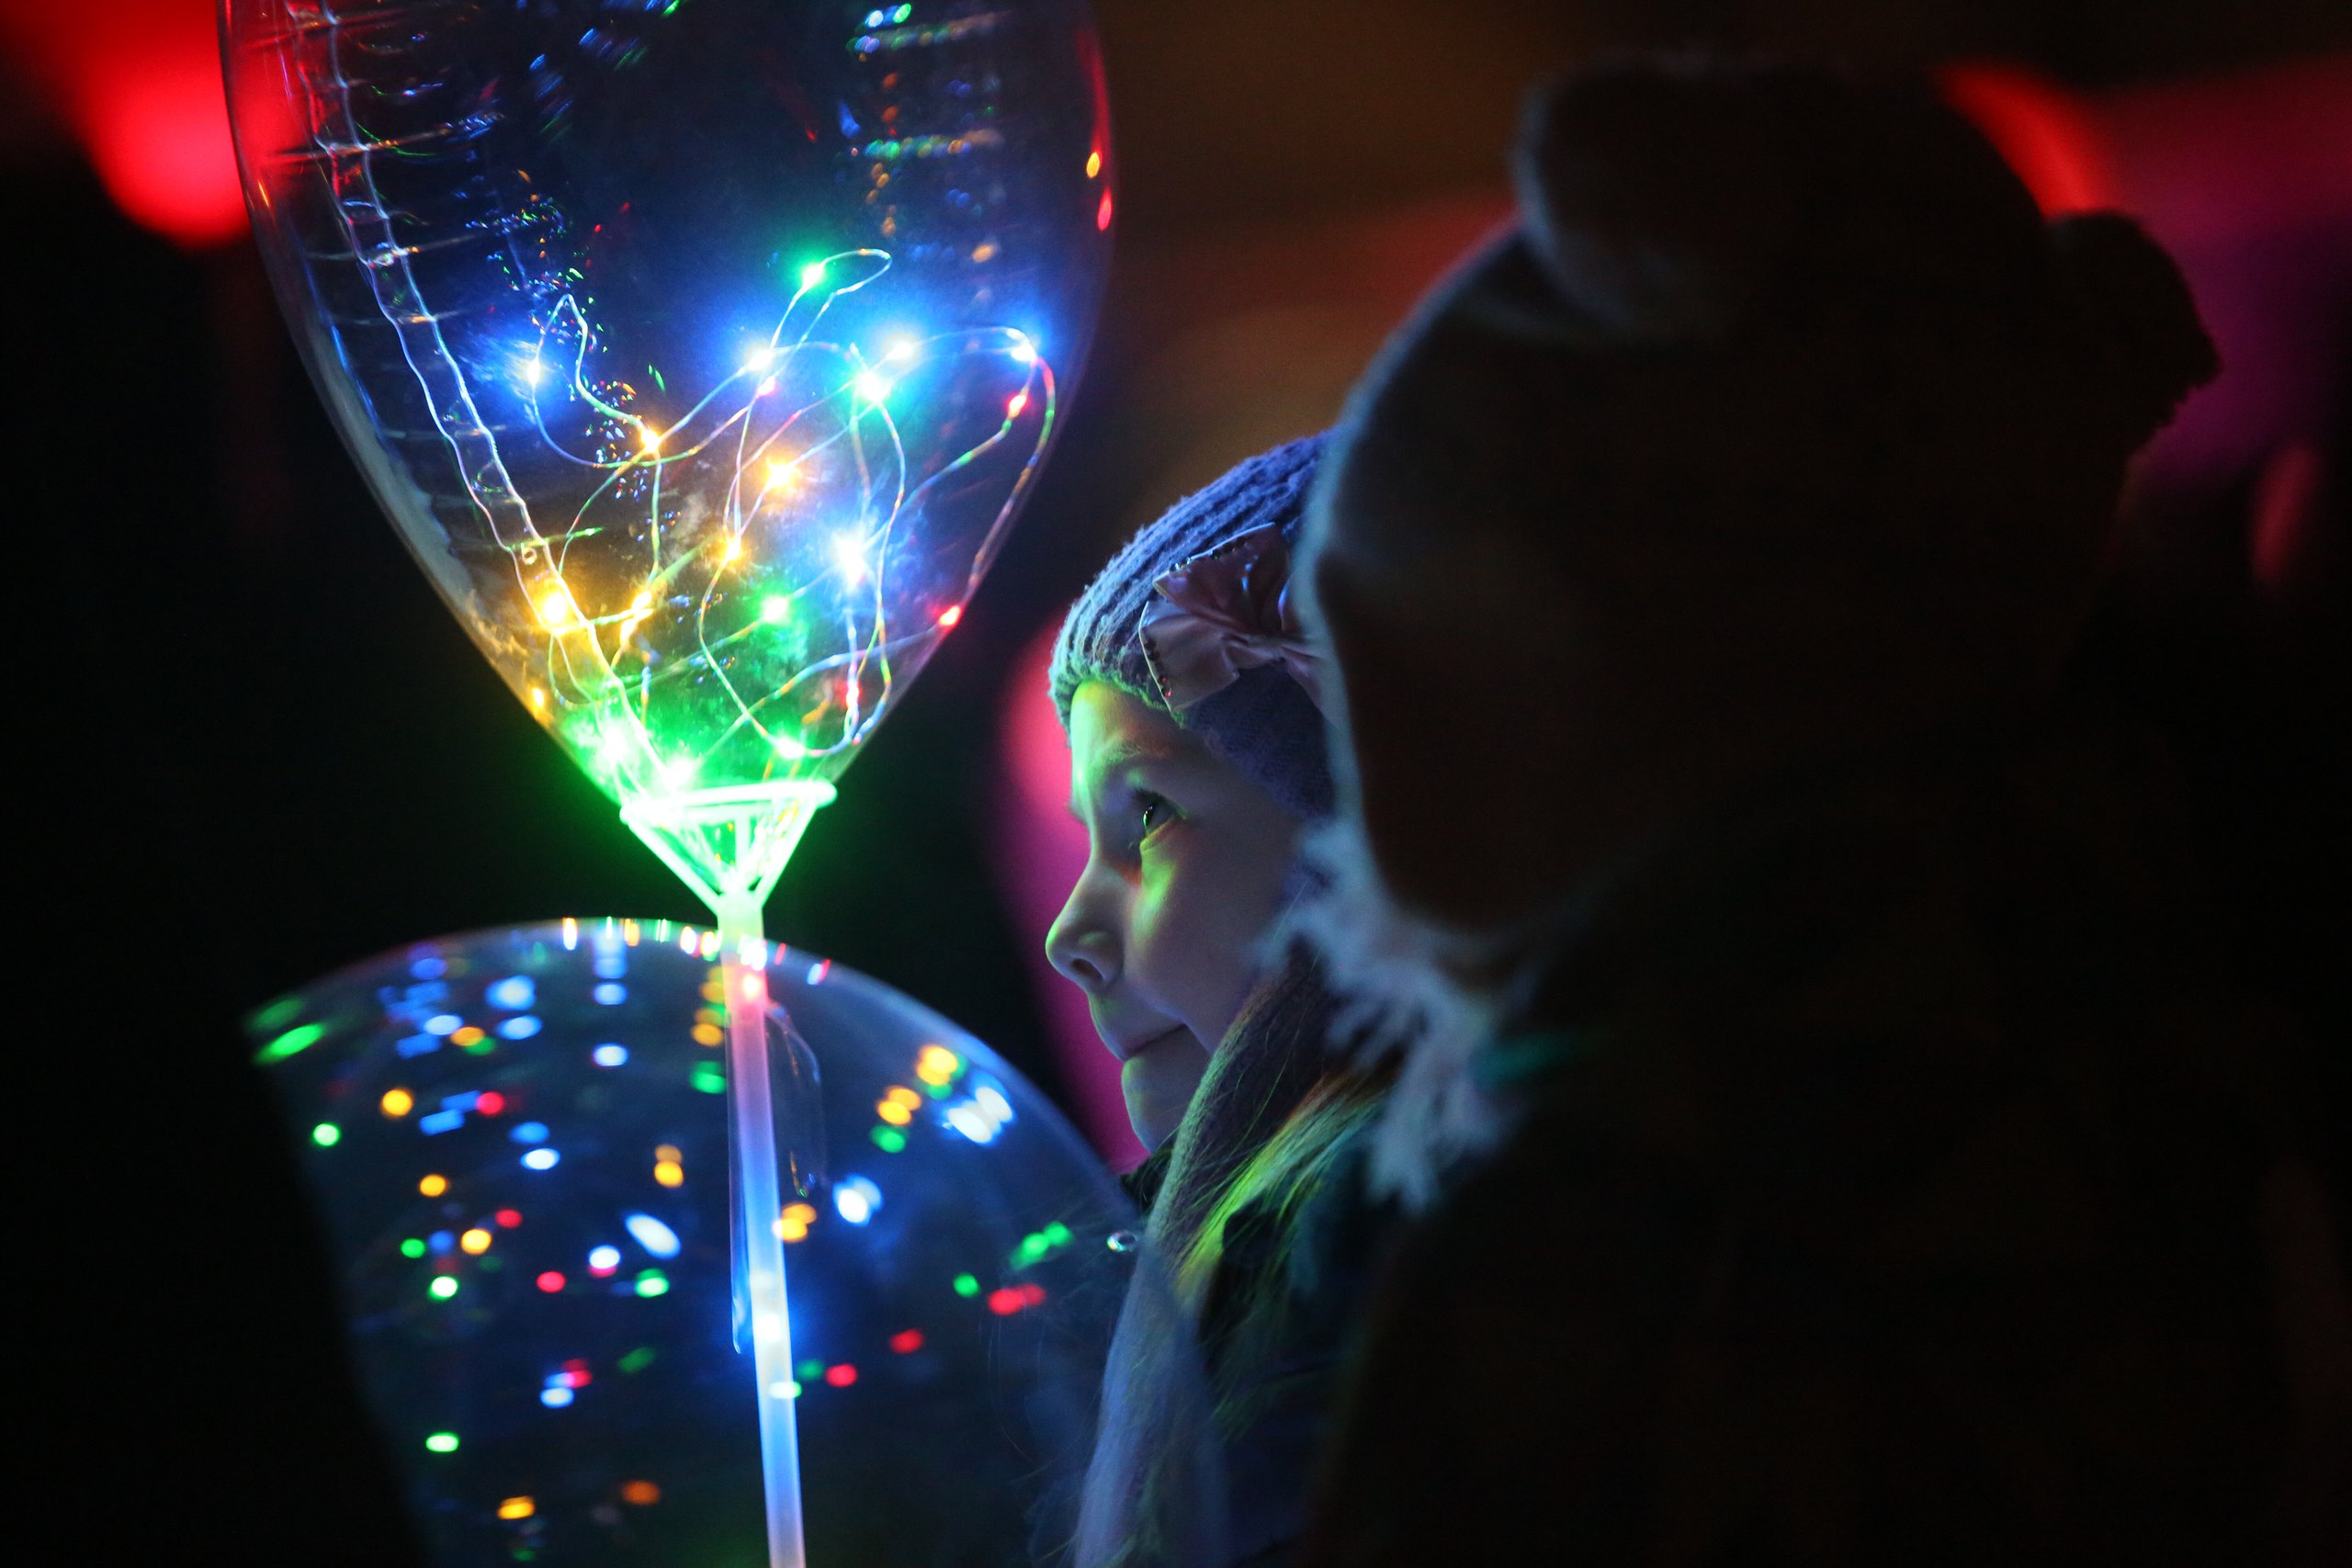 Фестиваль волшебных шаров в парке имени Бабушкина в Санкт-Петербурге